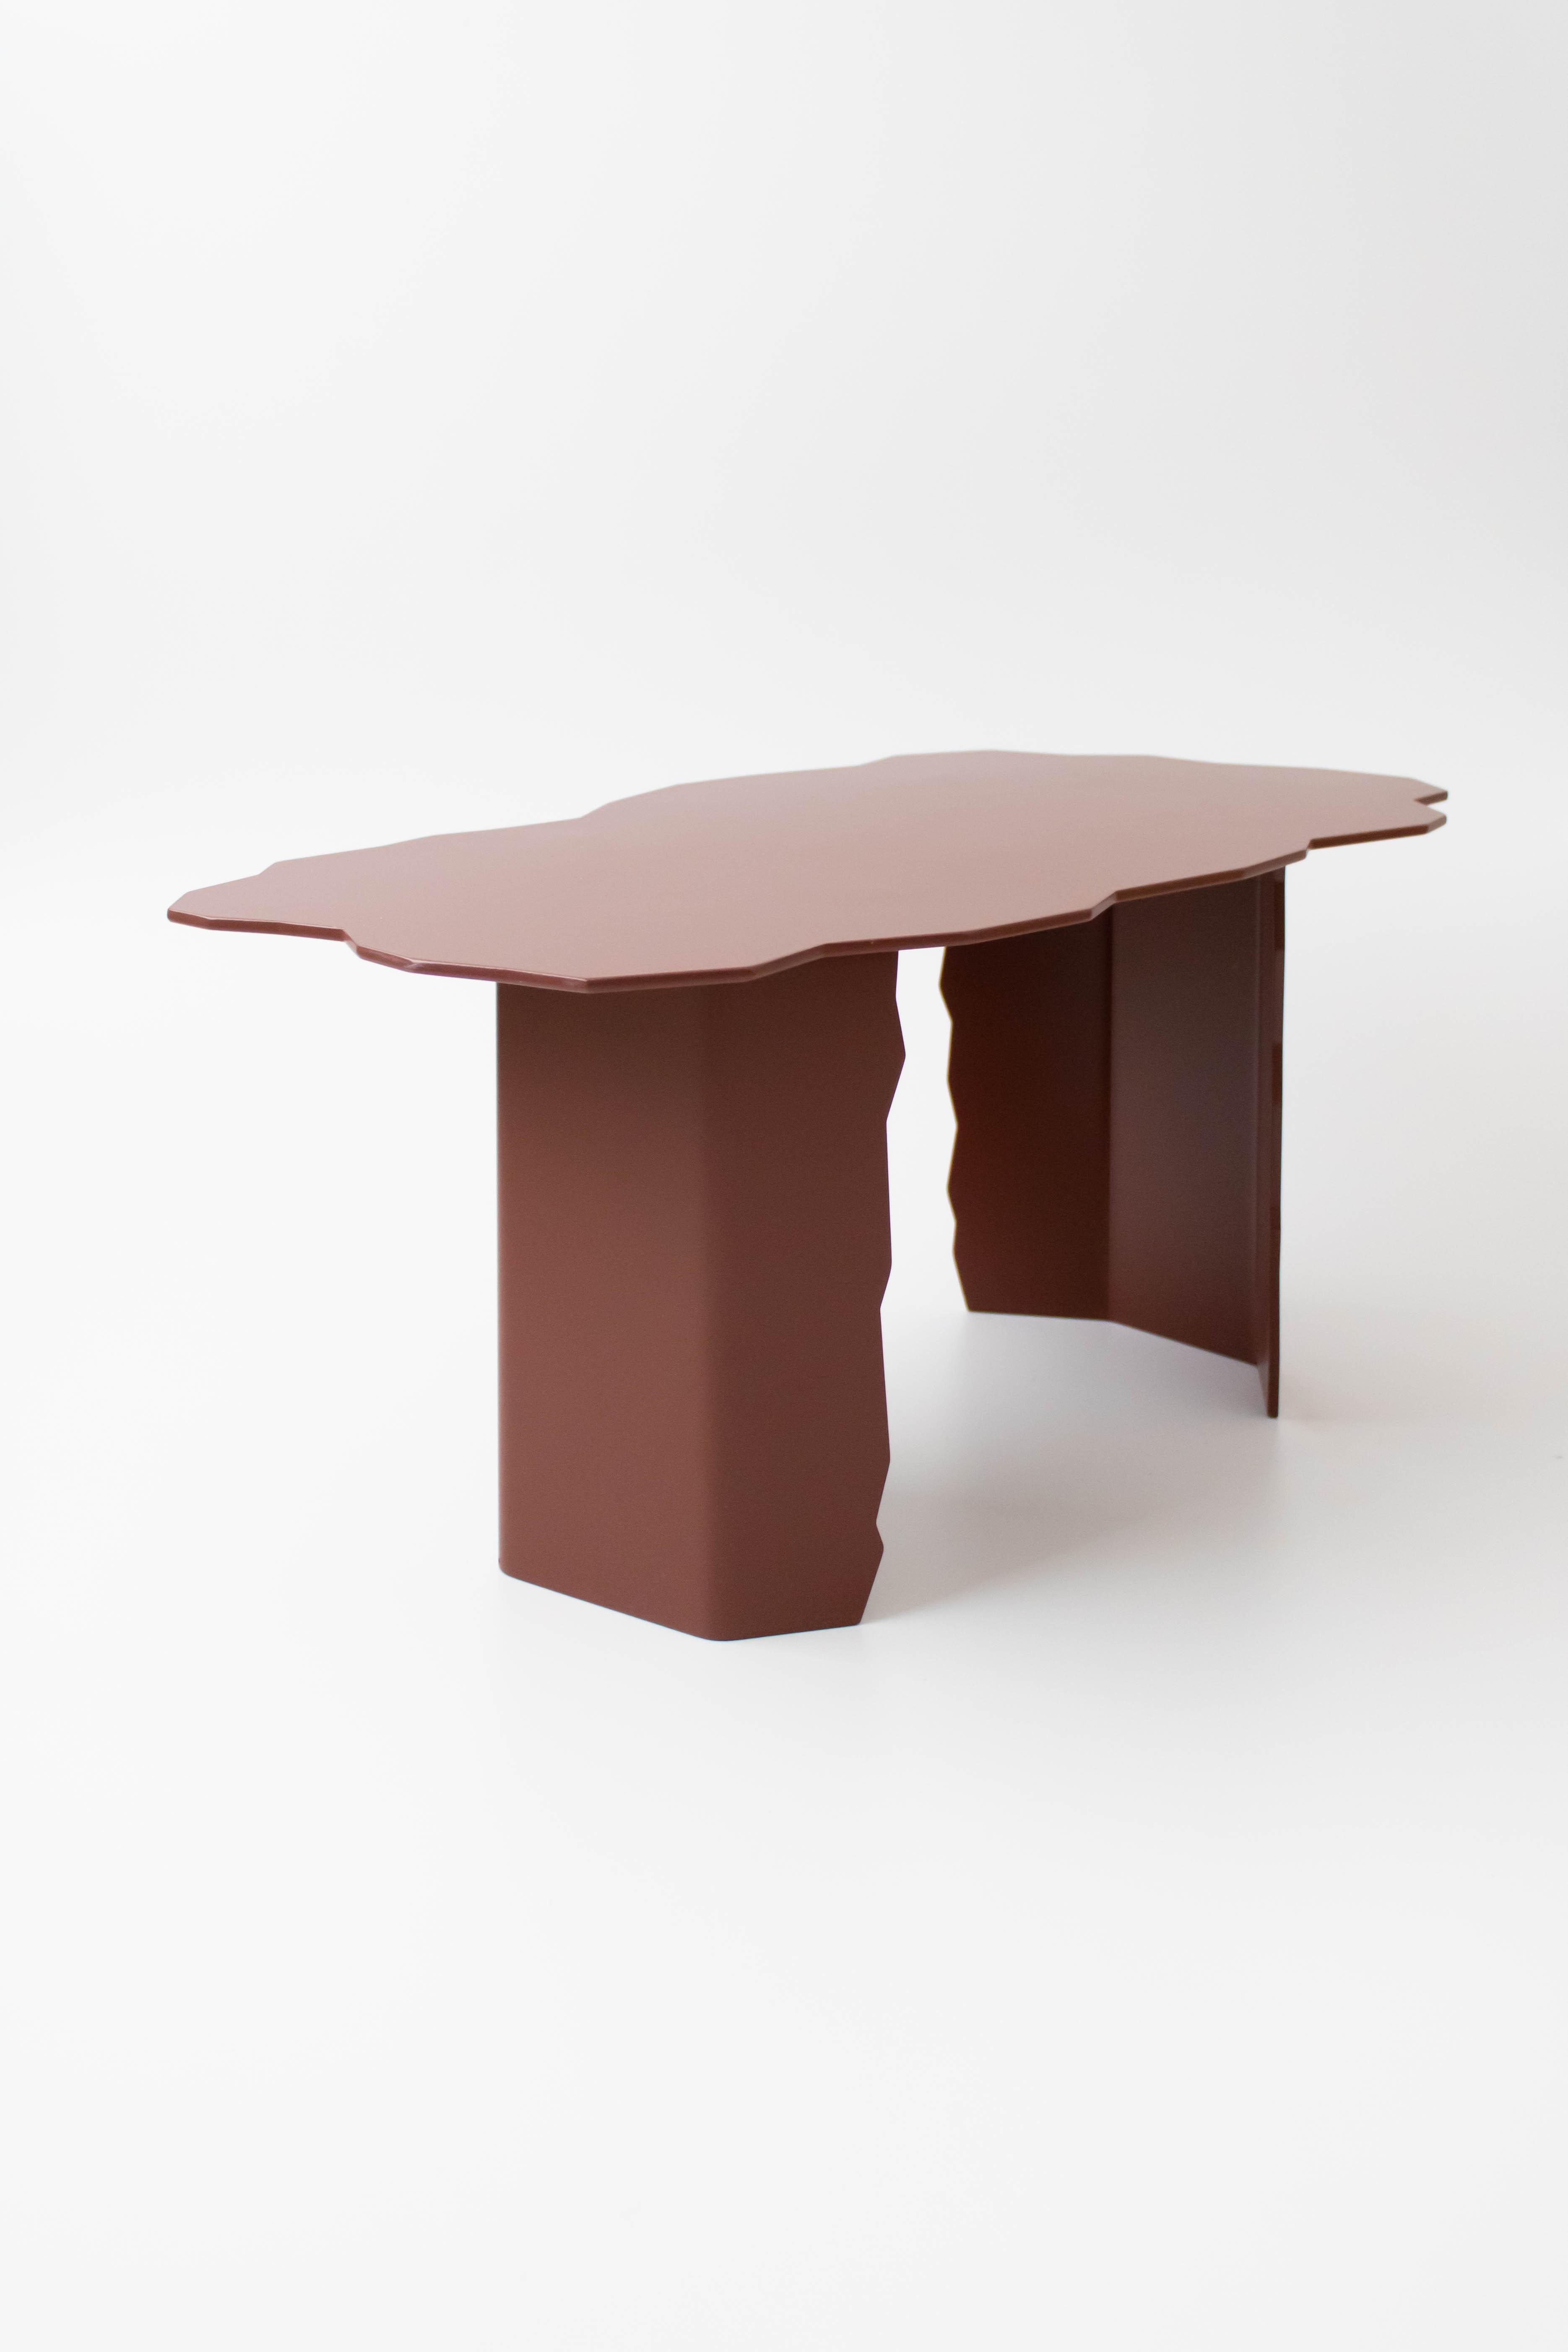 Table basse Disrupt par Arne Desmet
Dimensions : D42 x L75 x H34 cm
Matériaux : Aluminium laqué par poudrage.
Autres couleurs disponibles sur demande. 

Les formes des tables Disrupt s'inspirent des arêtes dentelées formées par les fissures de la